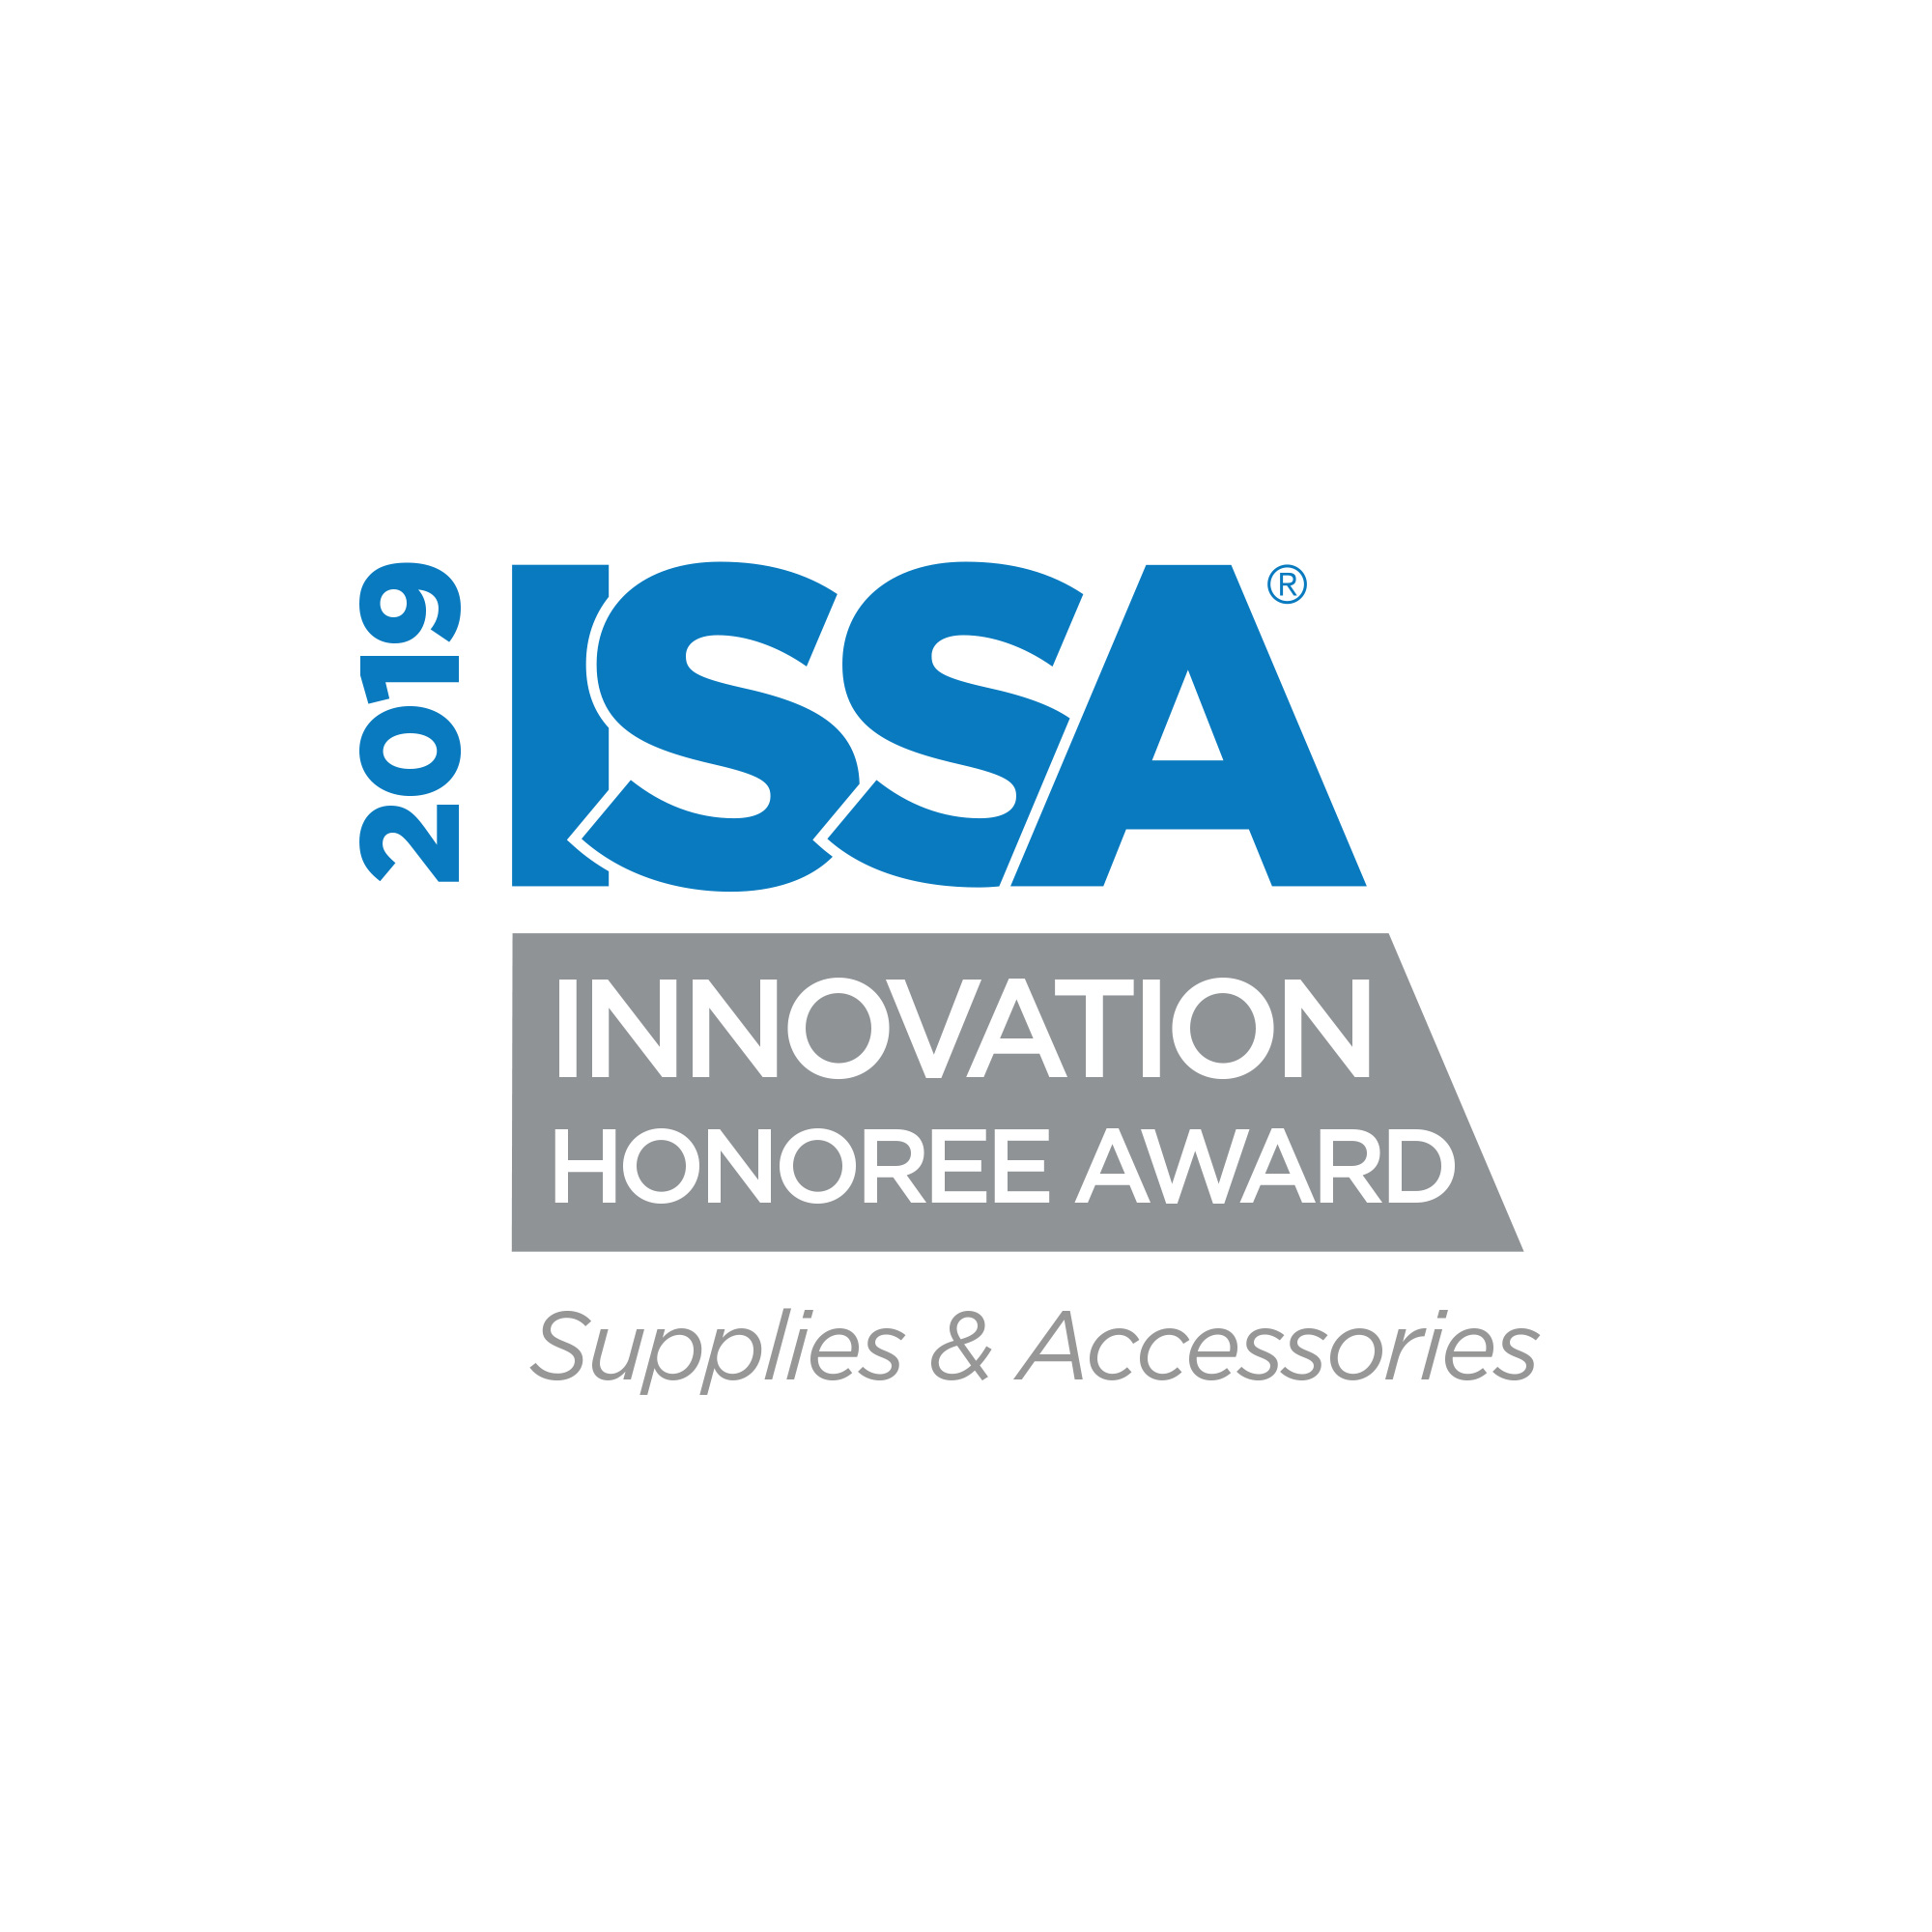 ISSA Honoree Award - 32 years